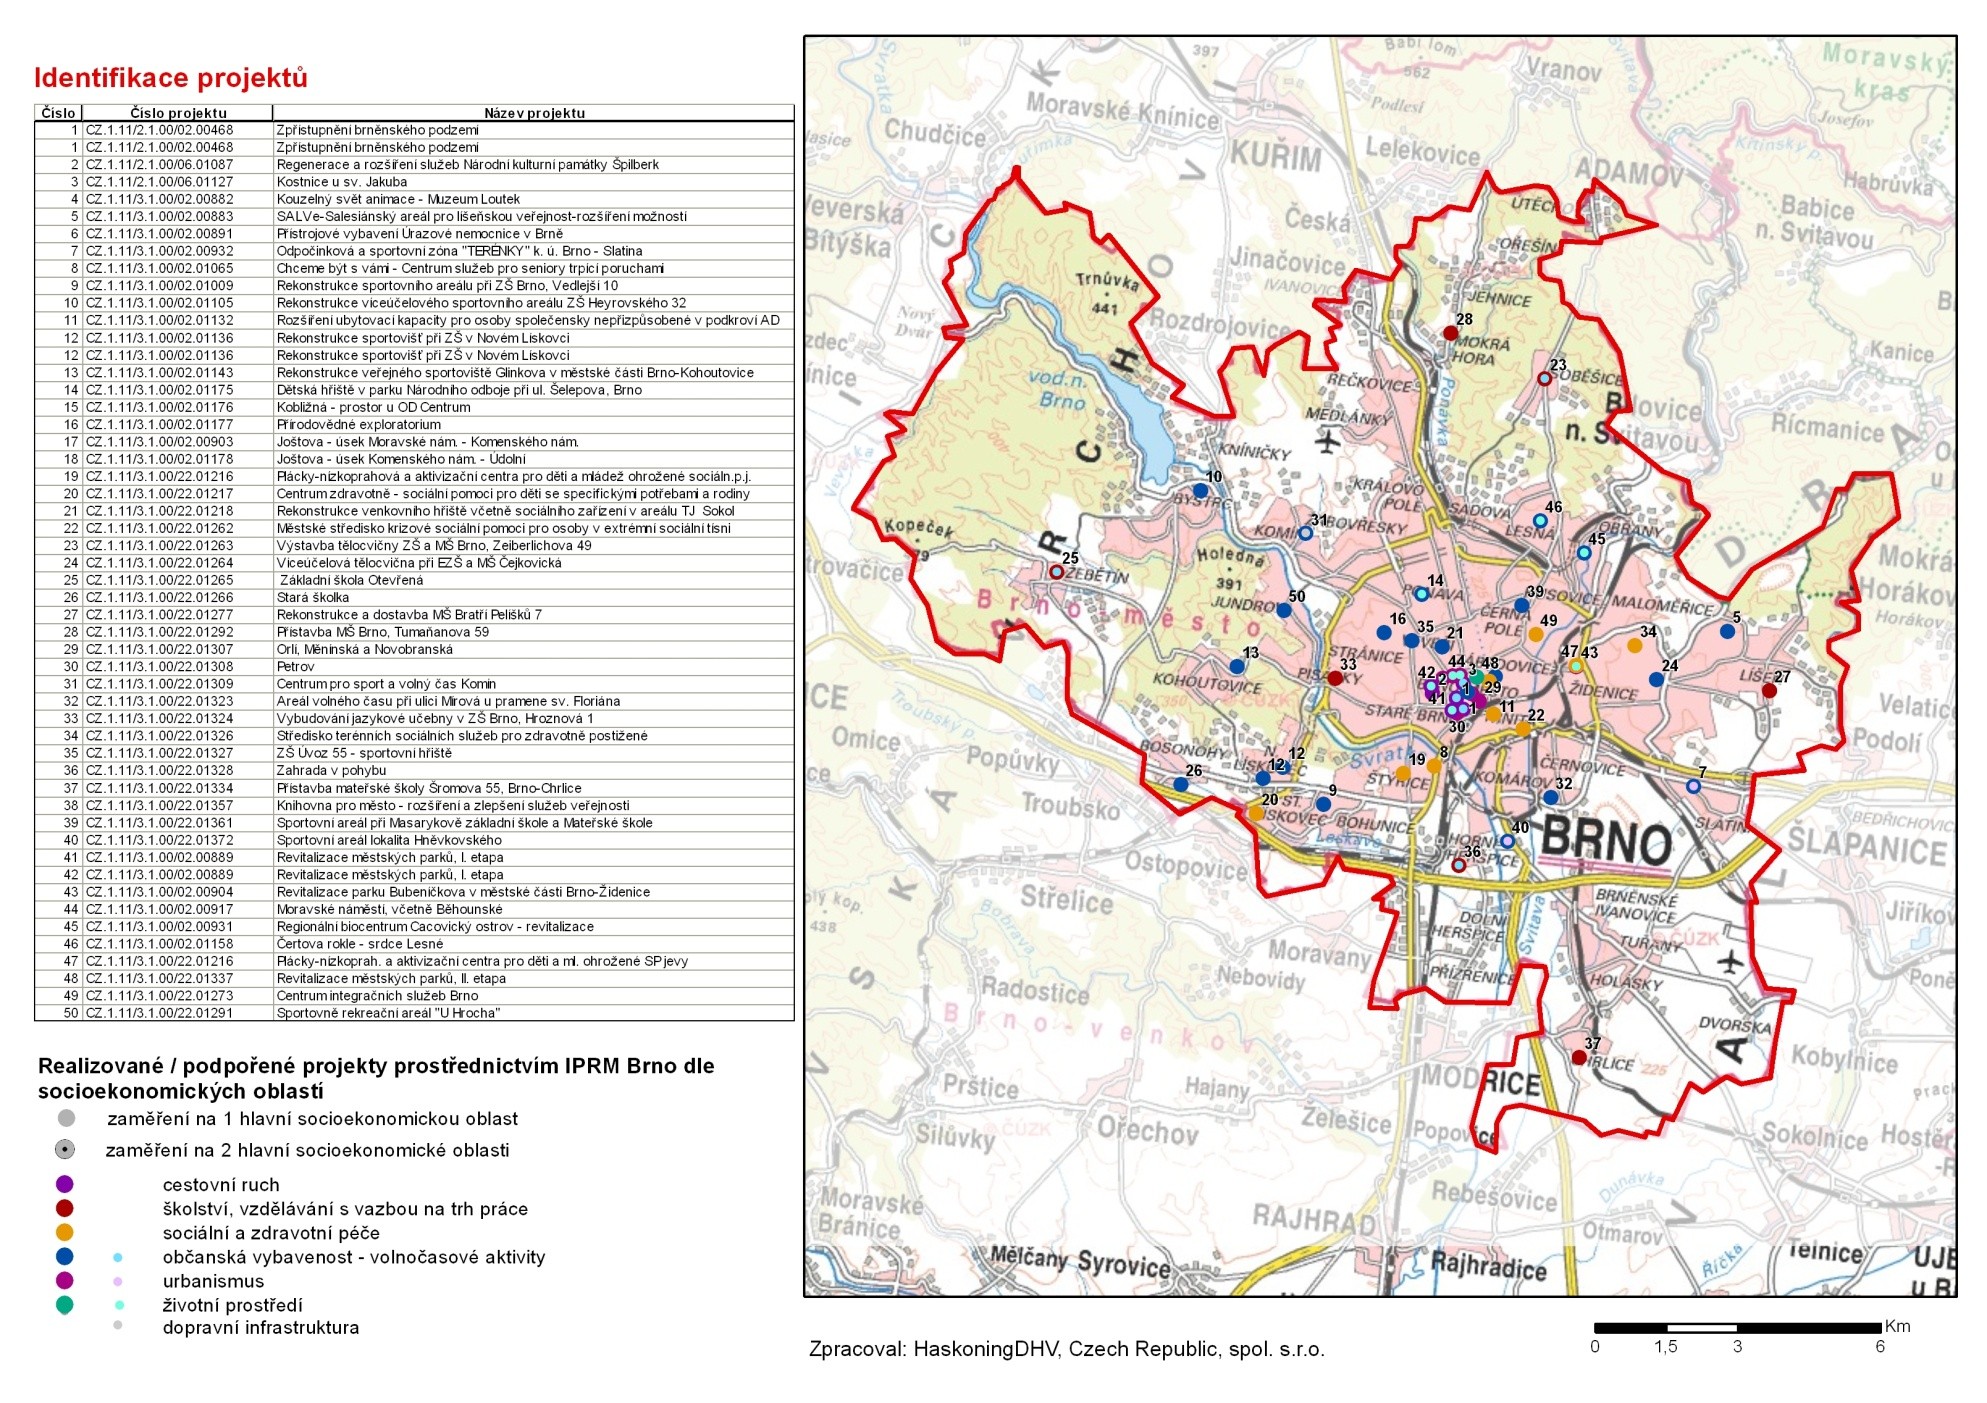 Obrázek 2: Územní lokalizace realizace projektů podpořených z ROP JV prostřednictvím IPRM Brno I a IPRM Brno II podle jejich